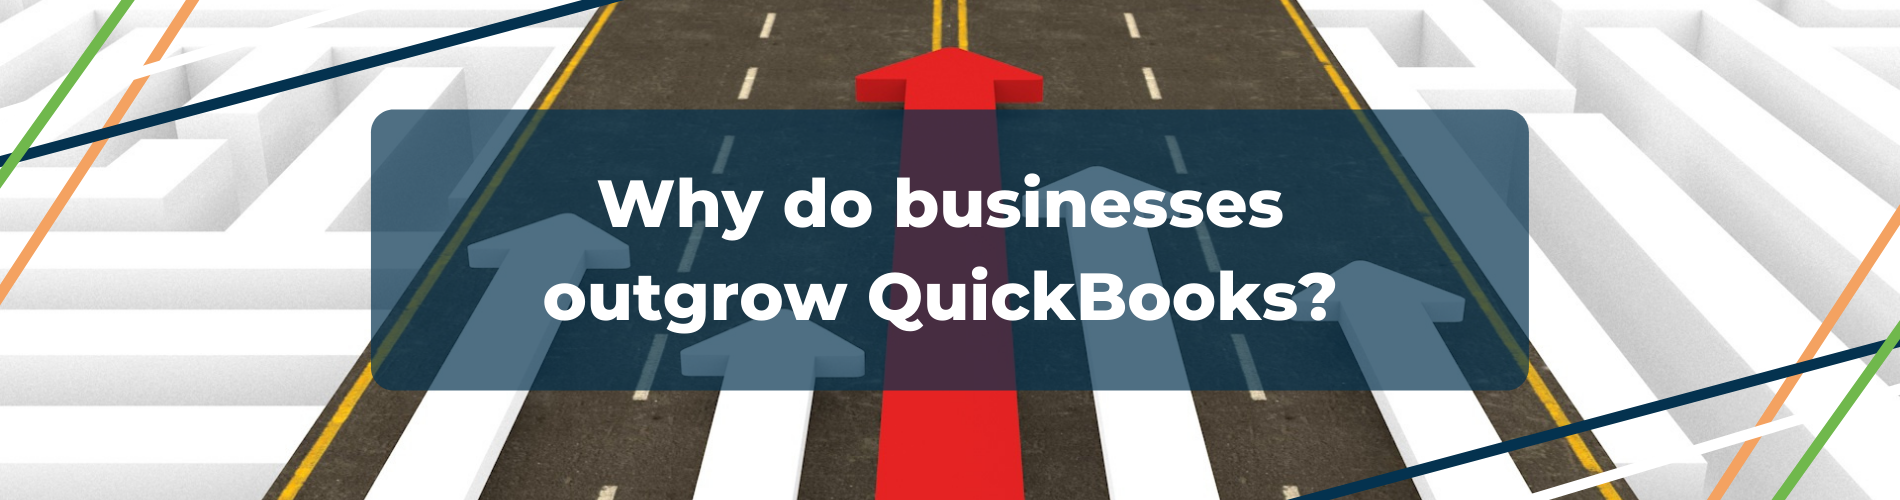 Why do businesses outgrow QuickBooks?